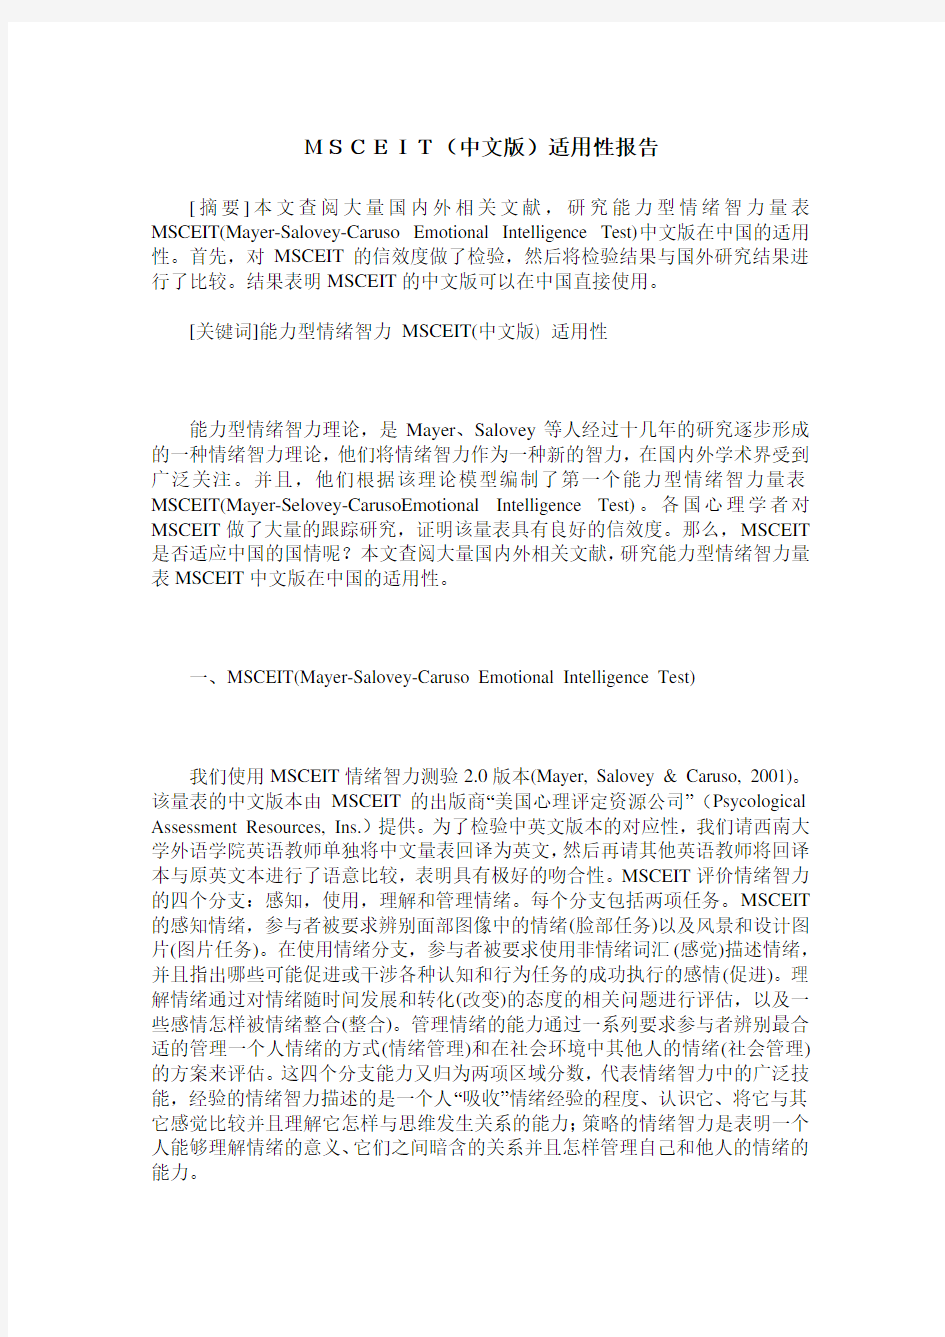 MSCEIT(中文版)适用性报告